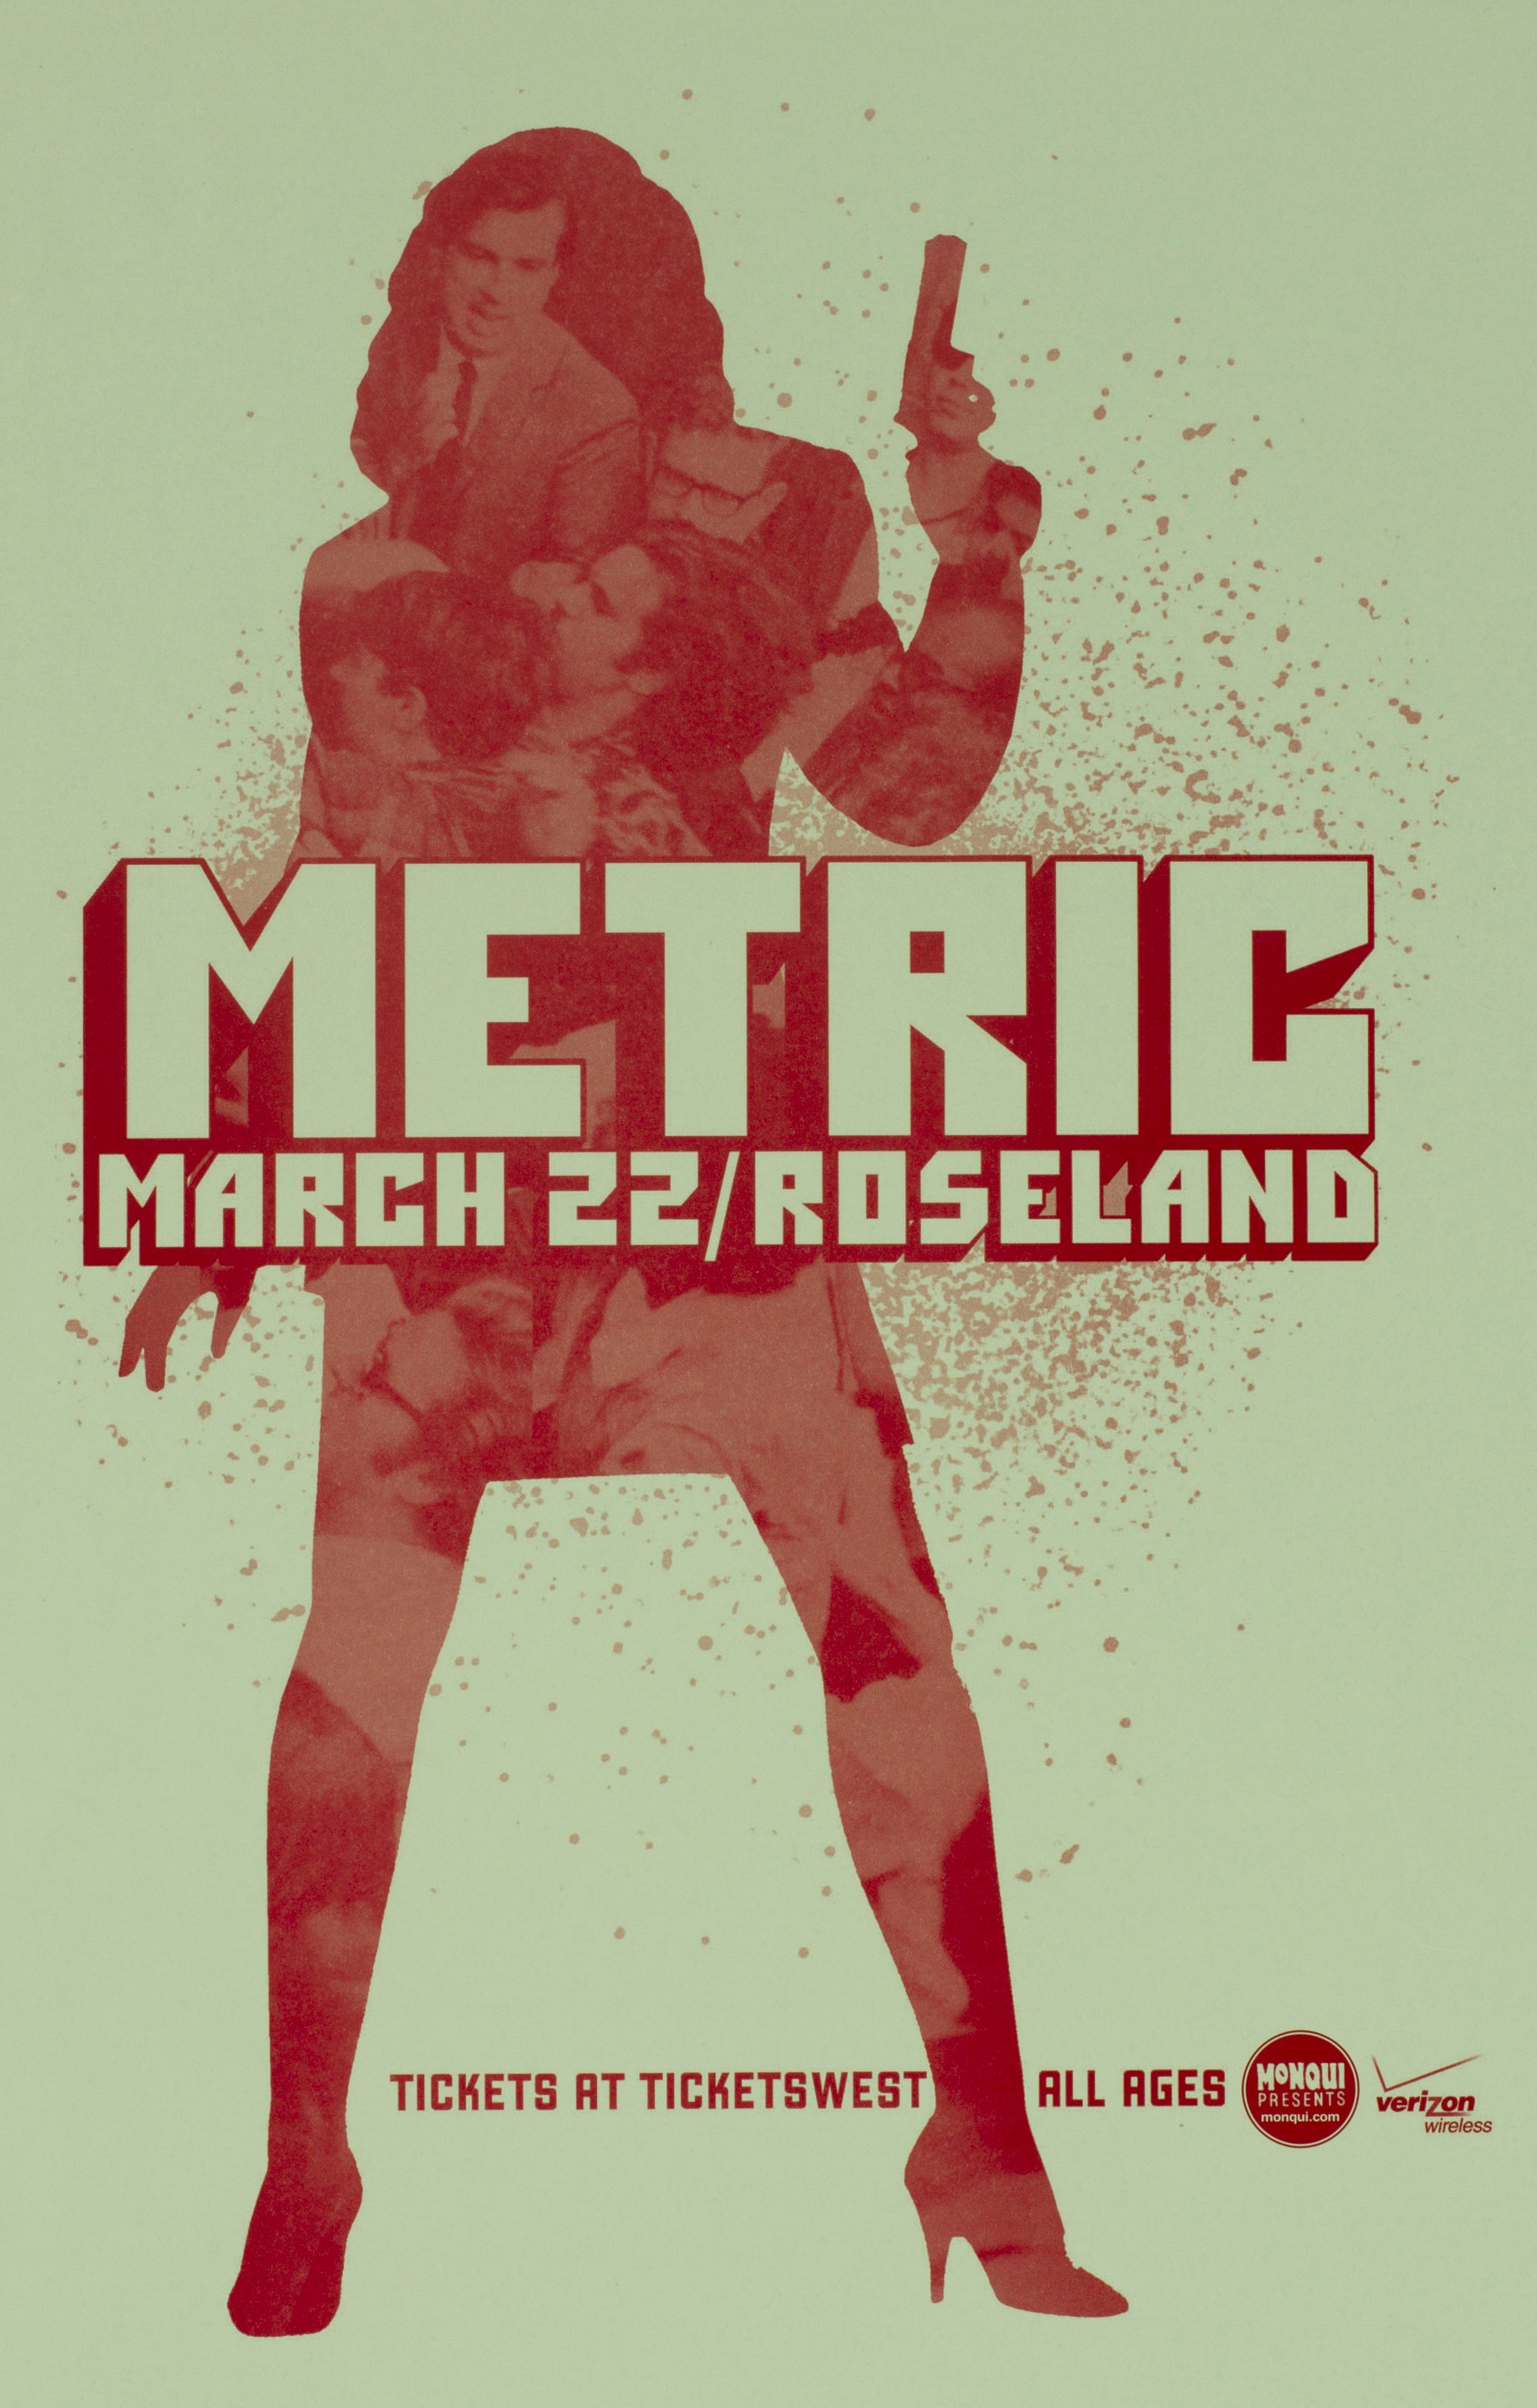 MXP-70.2 Metric 2010 Roseland Theater  Mar 22 Concert Poster